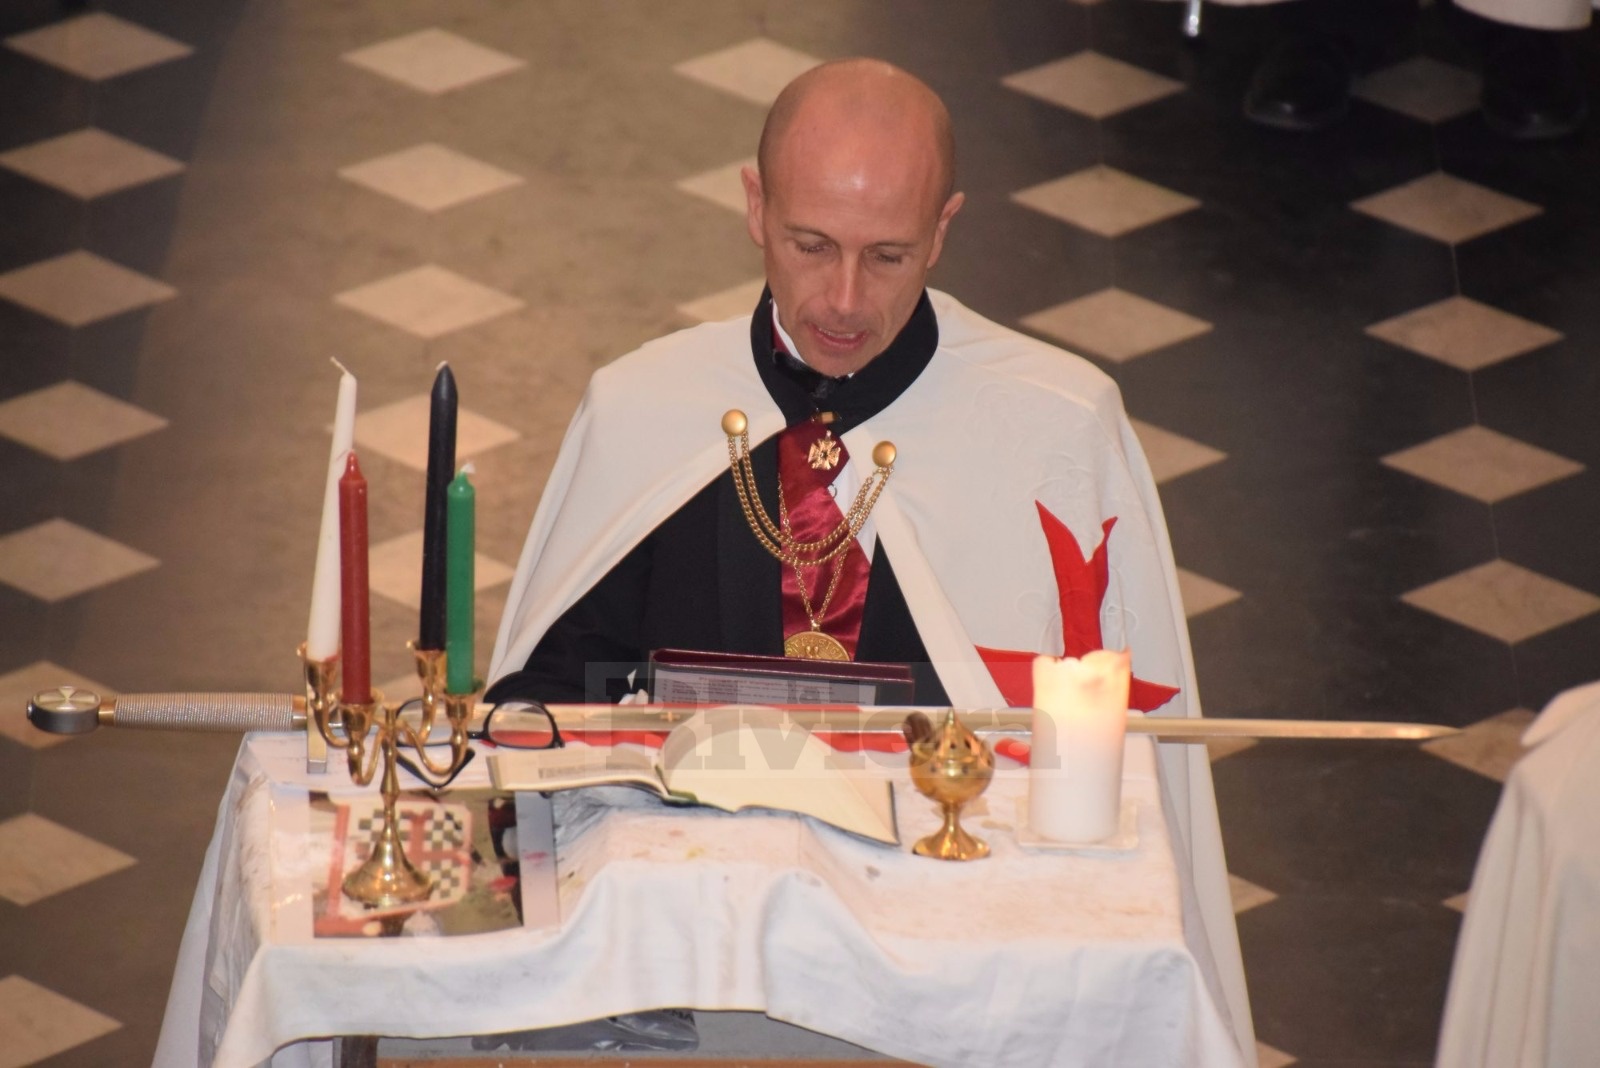 Domizio Cipriani Cavalieri Templari ex chiesa San Francesco Ventimiglia 1 dicembre 2018_02